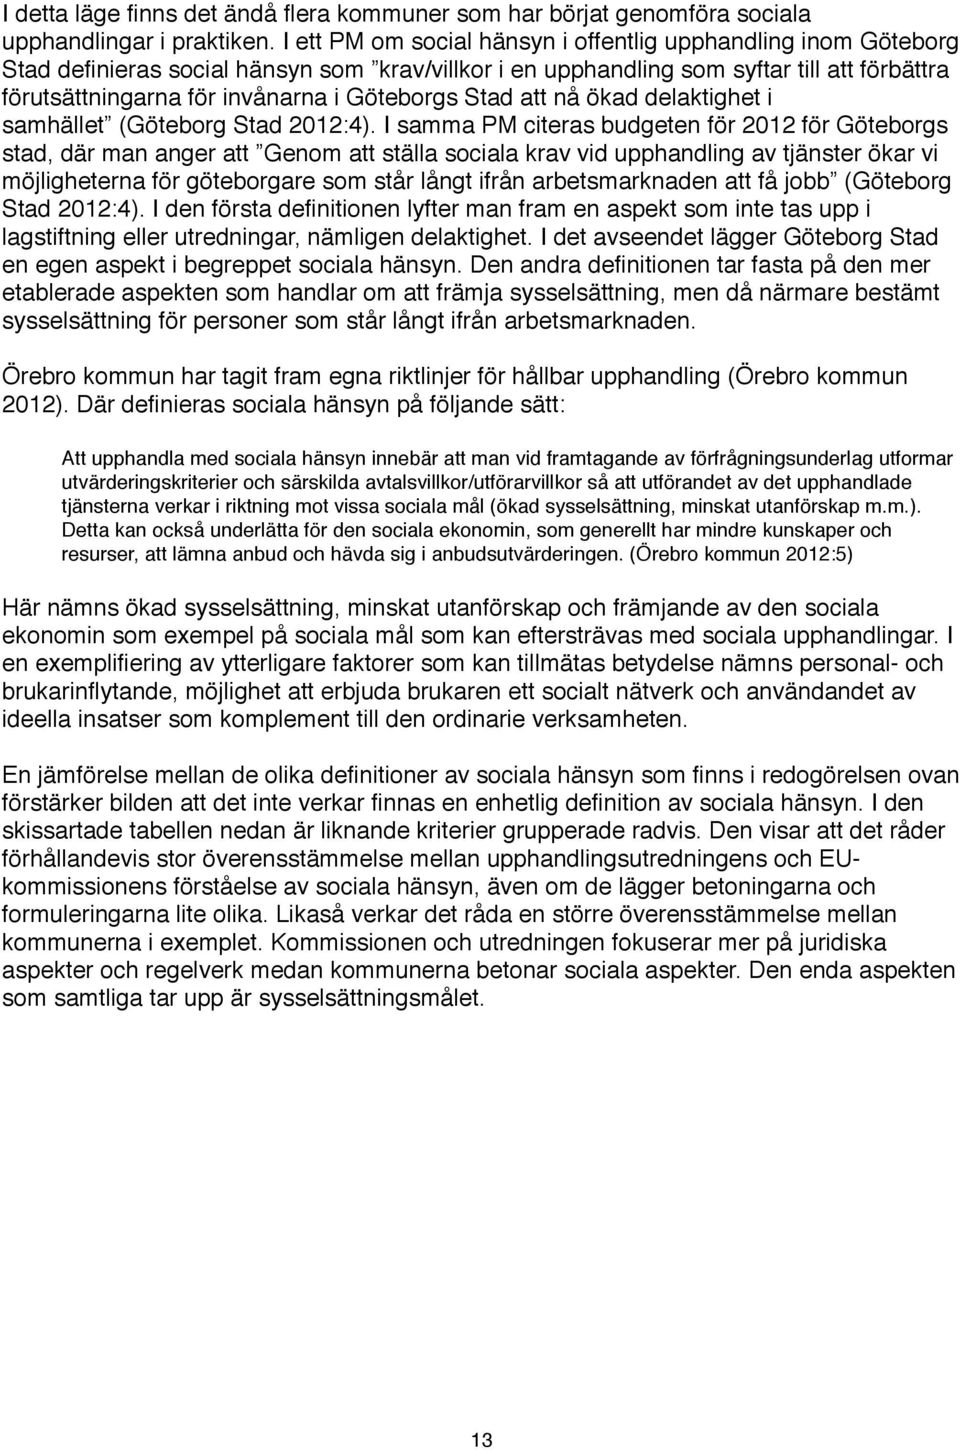 Göteborgs Stad att nå ökad delaktighet i samhället (Göteborg Stad 2012:4).